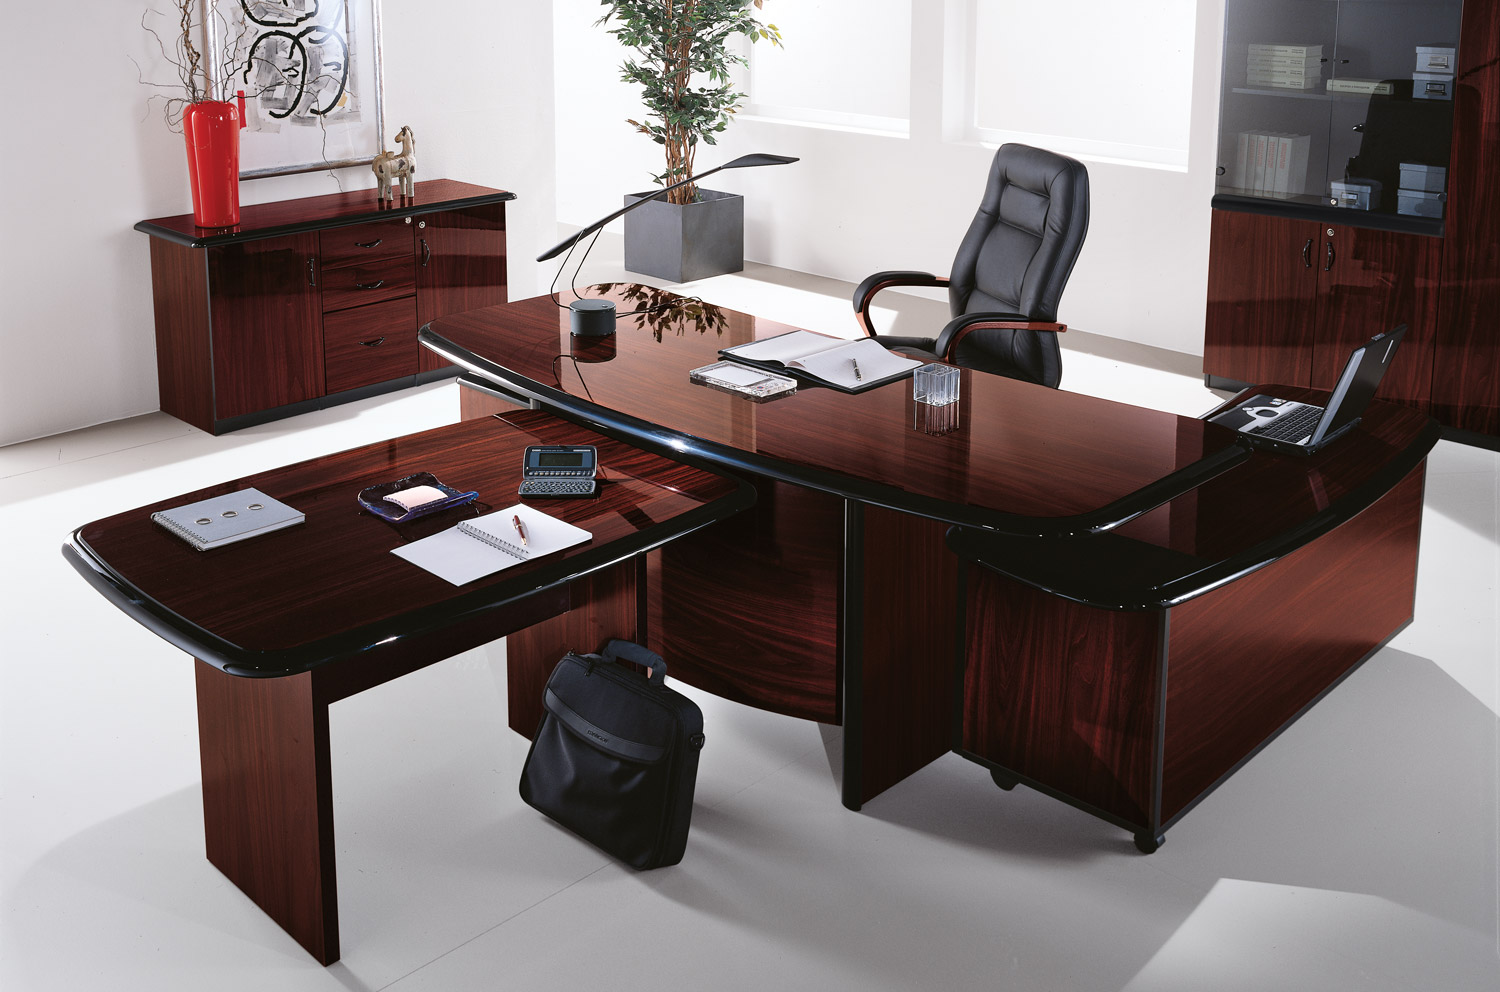 Какую мебель закупают для офиса?